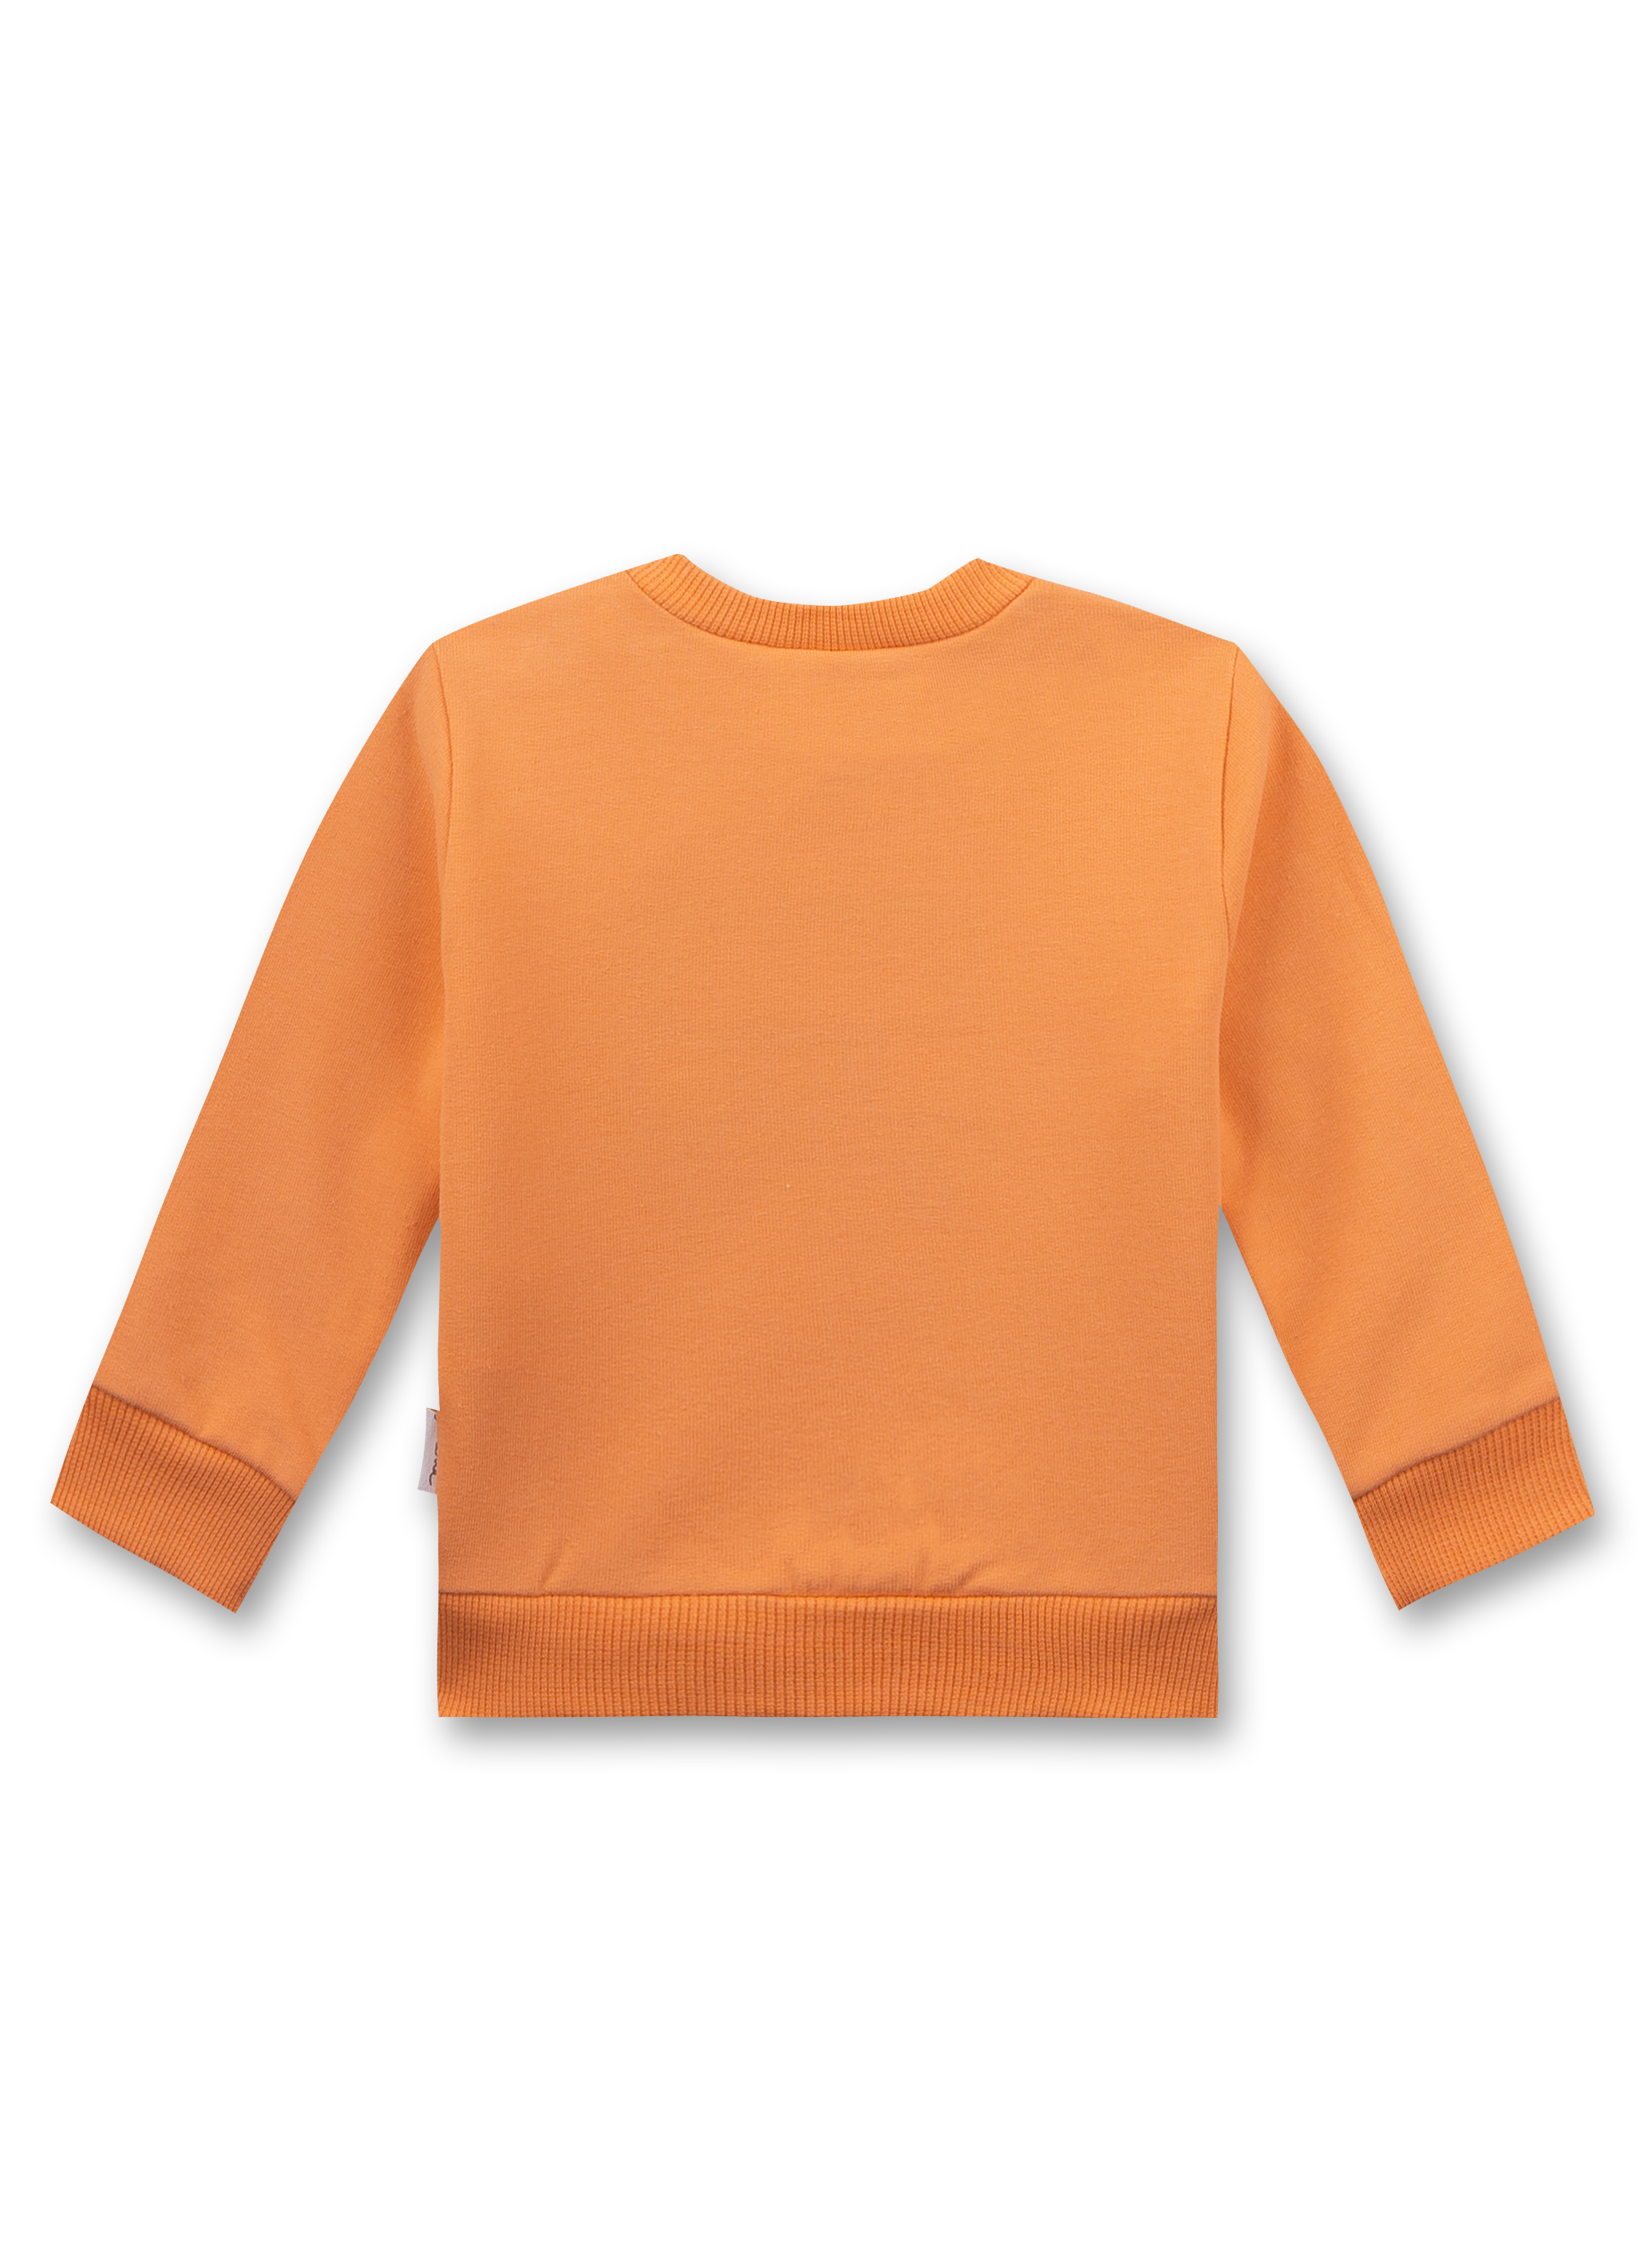 Jungen-Sweatshirt Orange